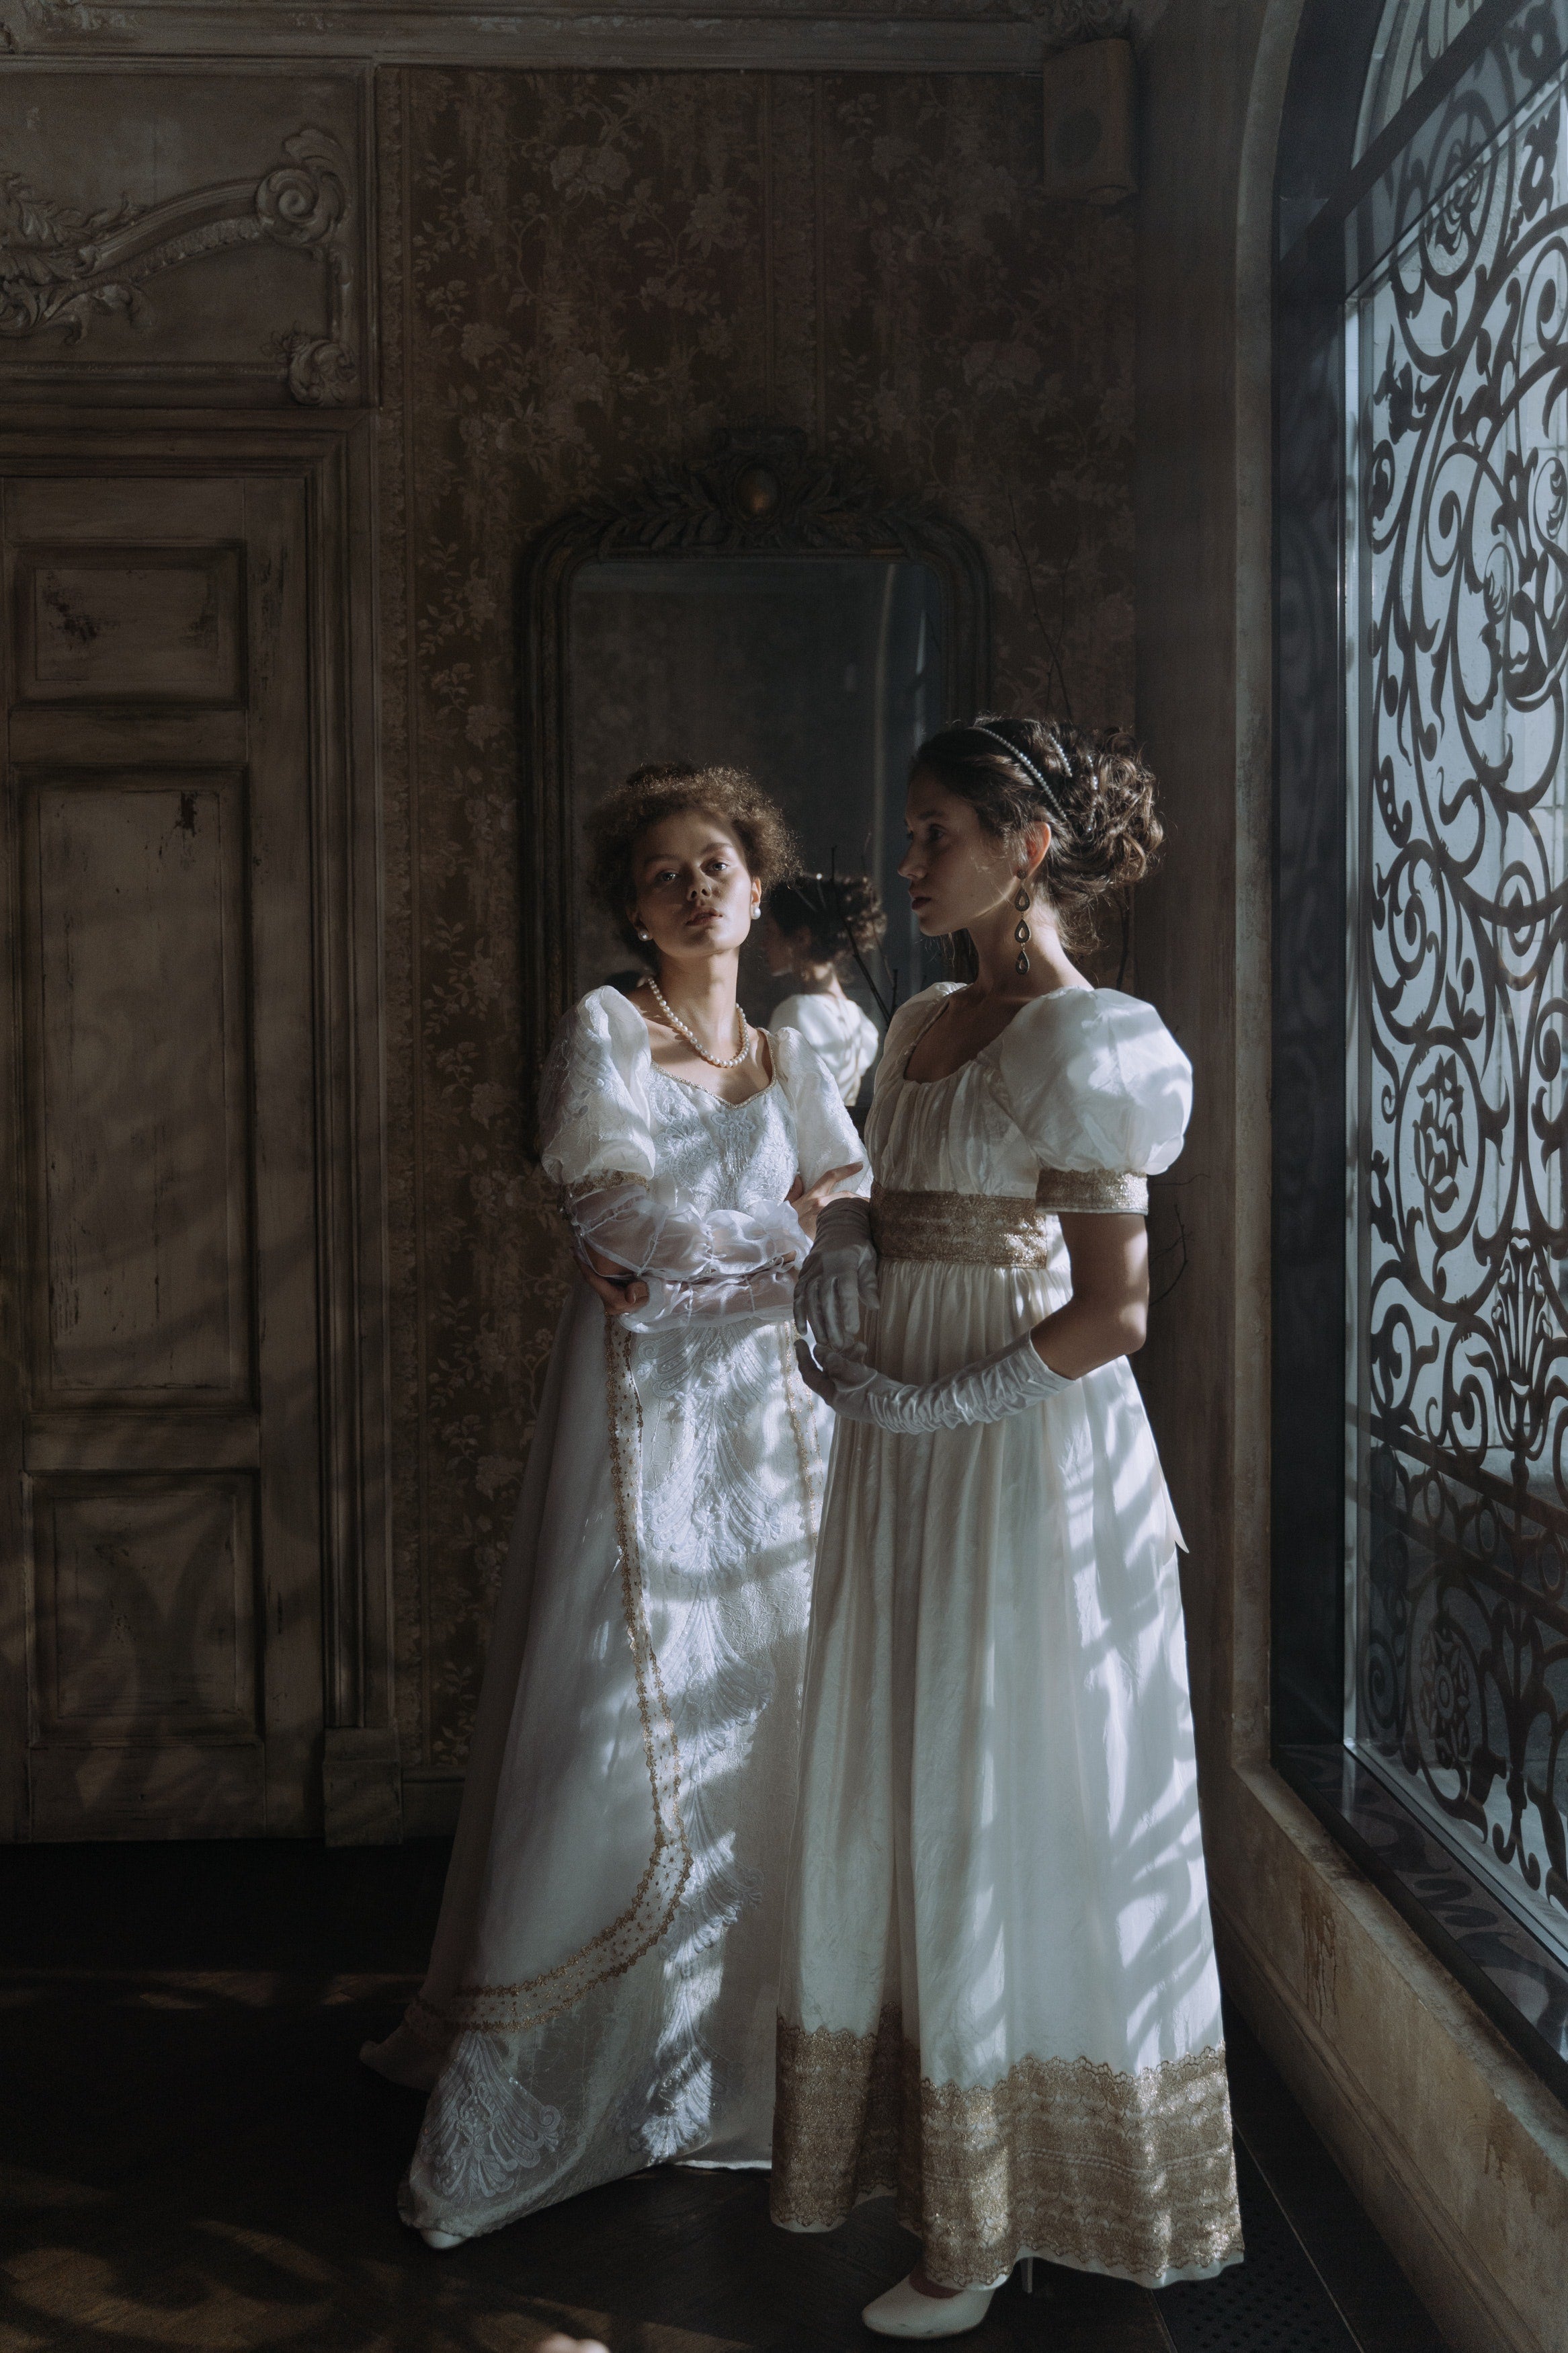 Wonderland by Lilian: The Finest in Regency Era Fashion